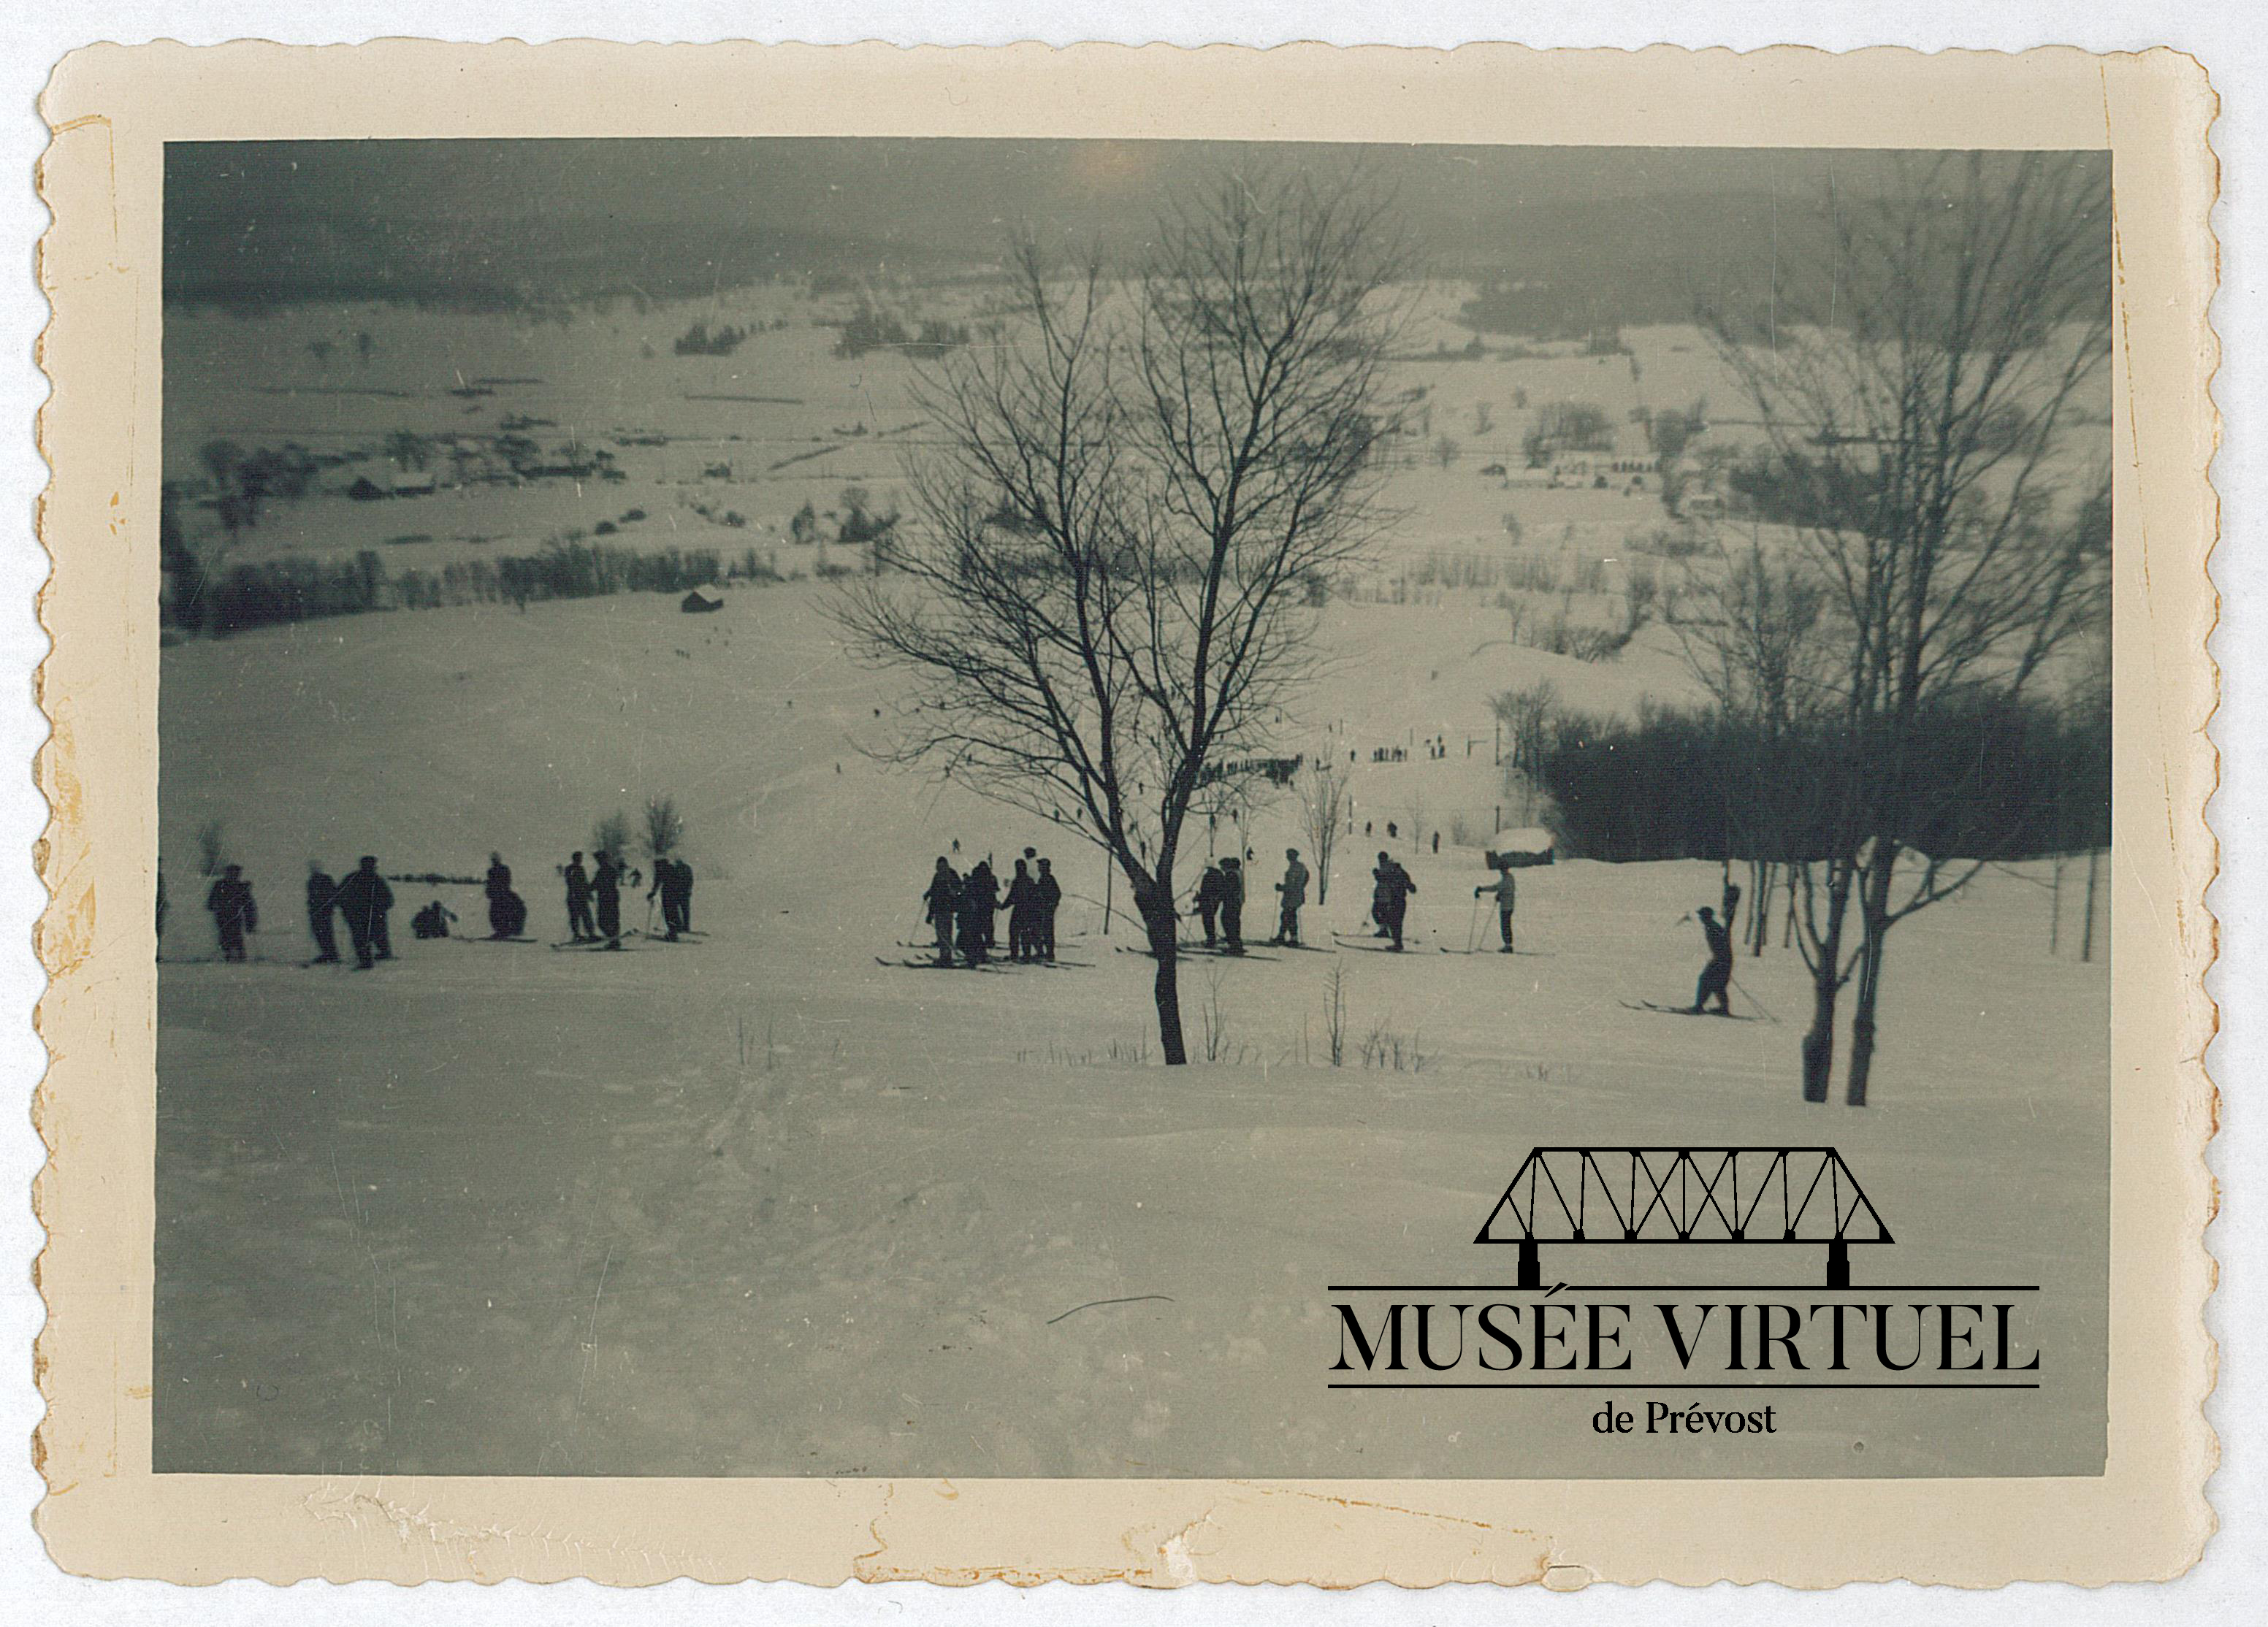 13. Une vingtaine de skieurs sur la pente Parent entre 1949 et 1955, avec vue sur le Vieux-Lesage au loin - Collection de Luc Parent